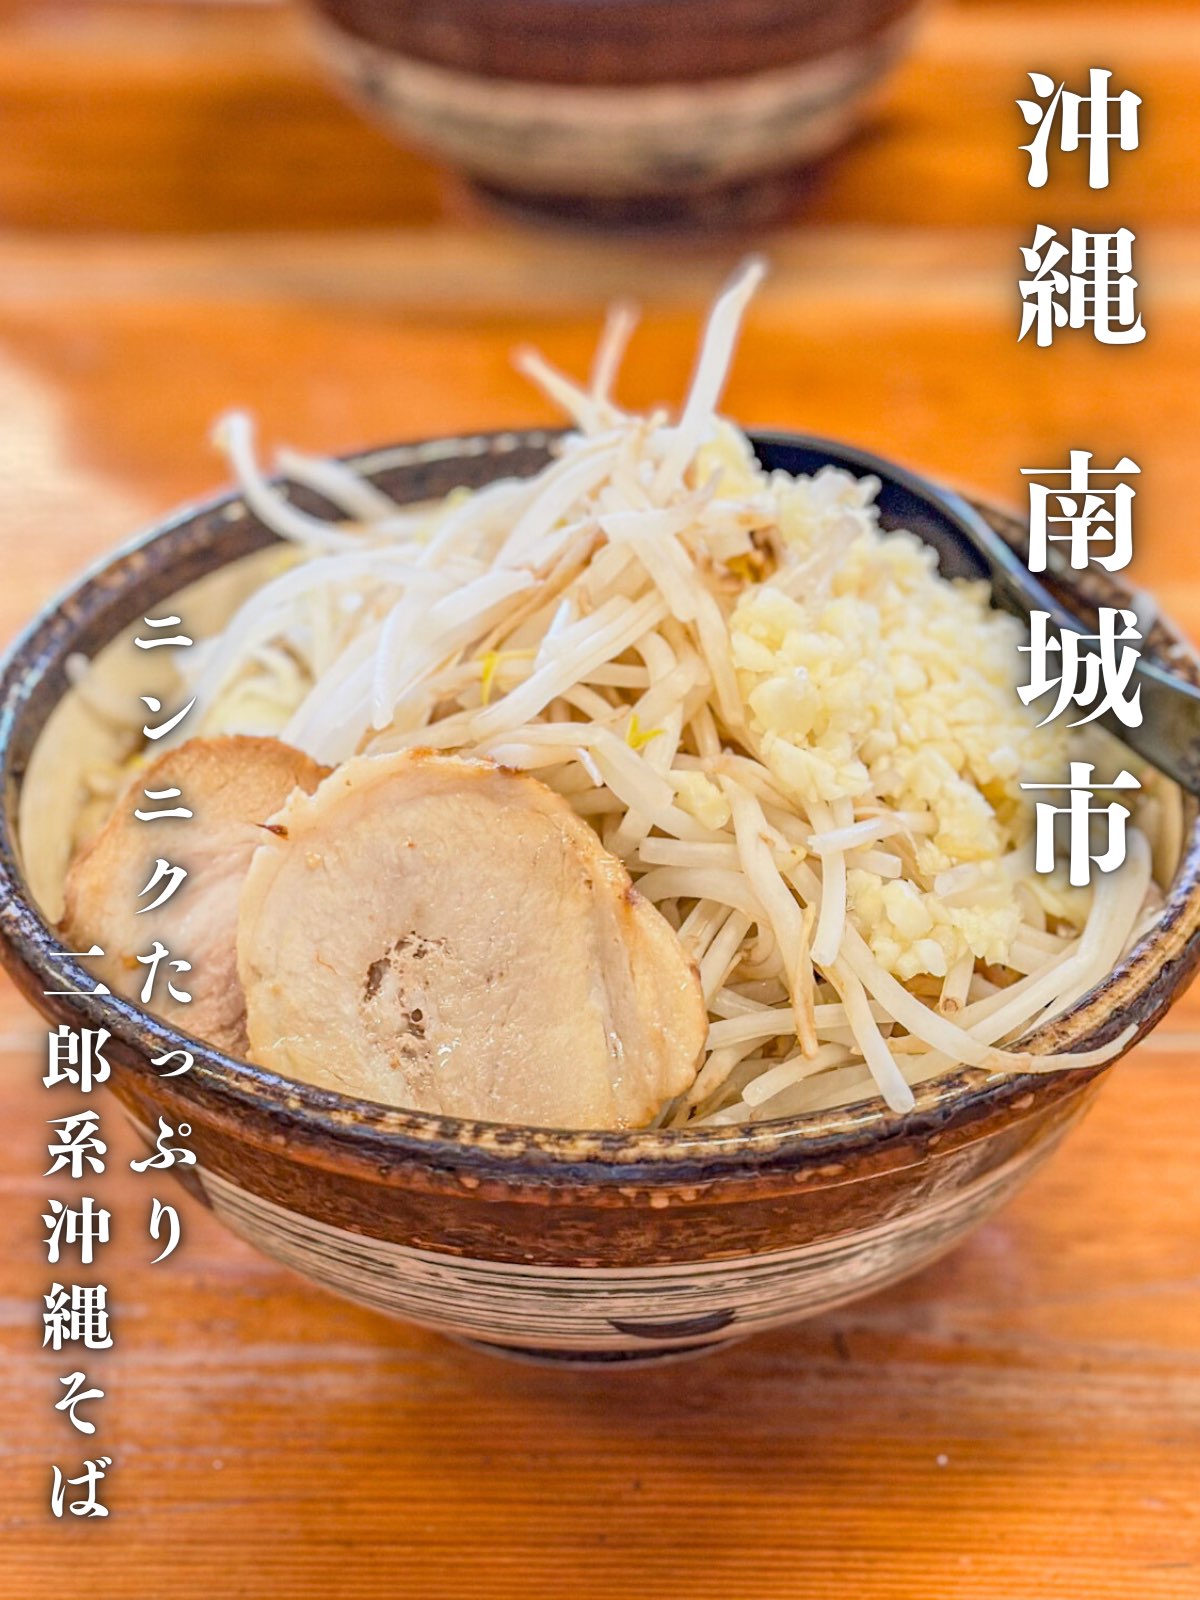 在冲绳麦面中可以吃到次郎的😍冲绳麦面店❣️